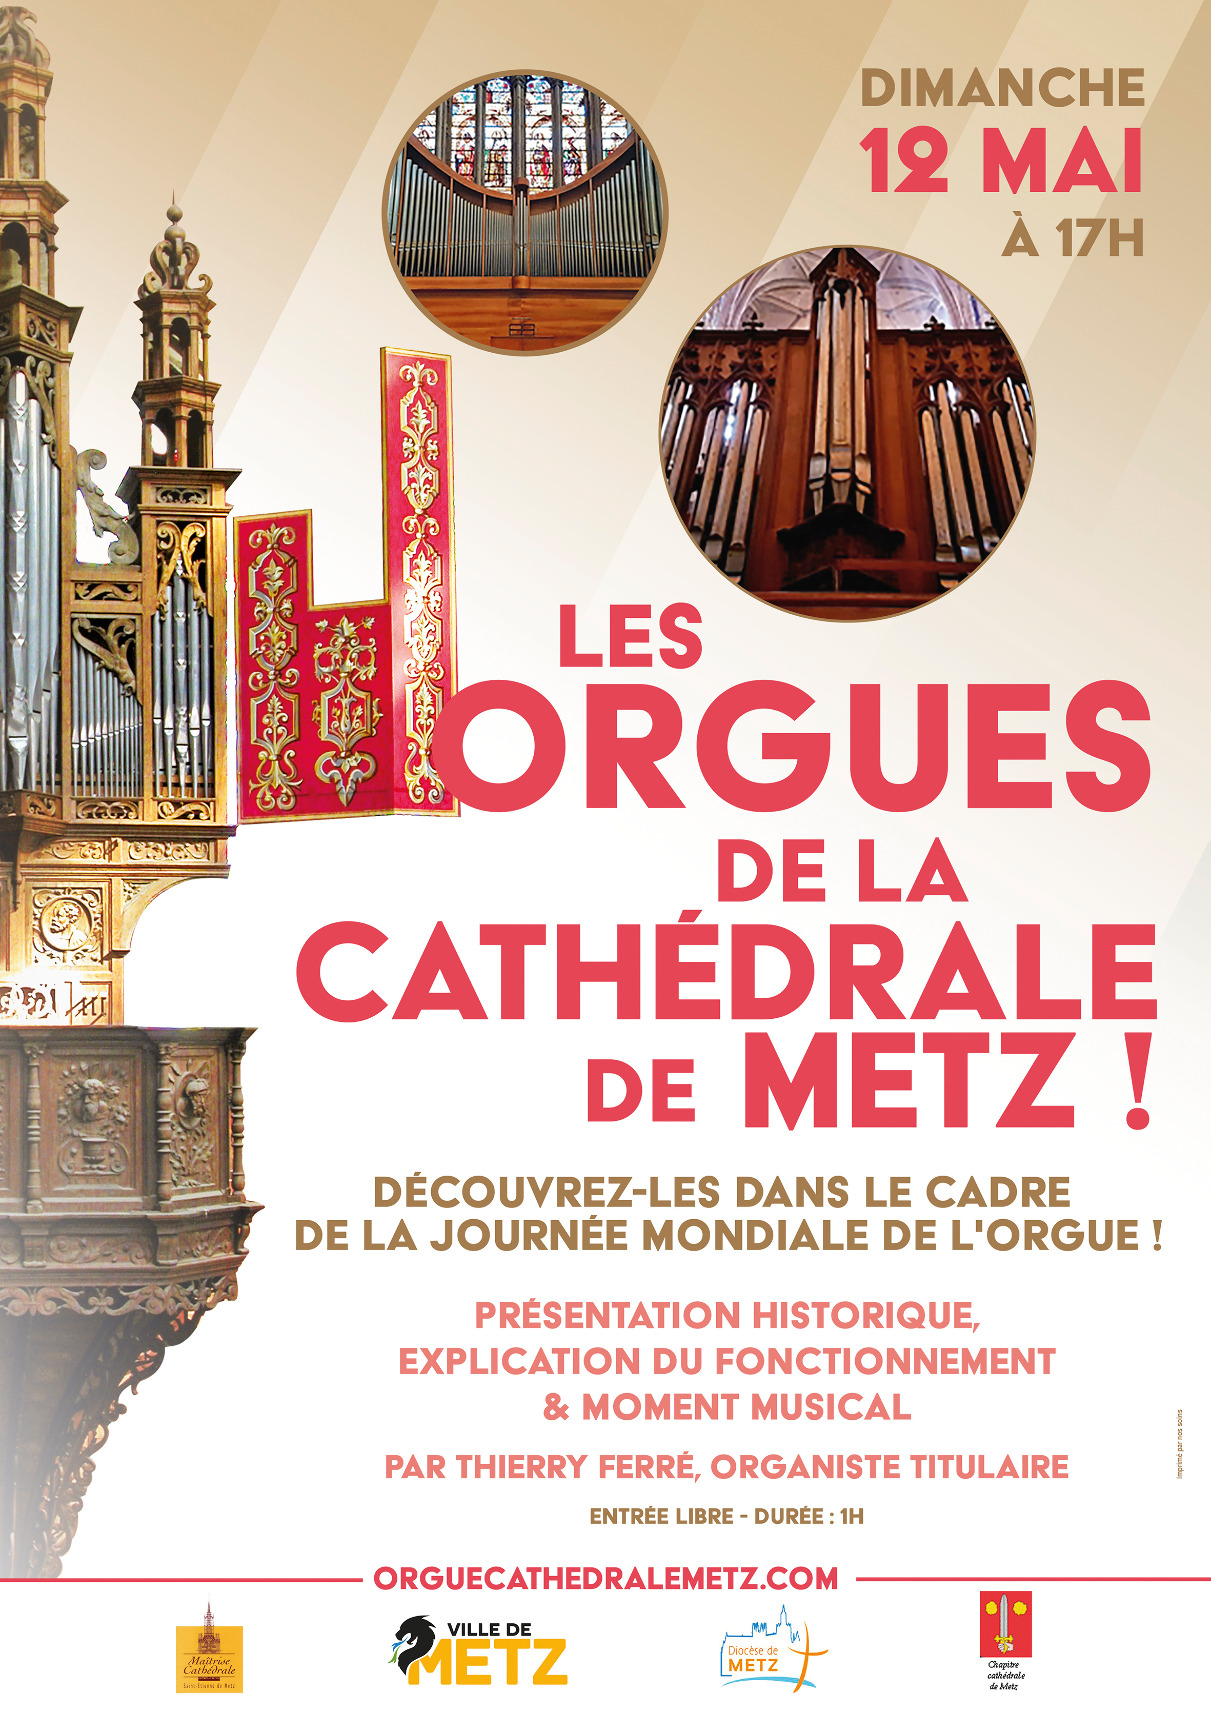 Découverte des orgues de la cathédrale de metz